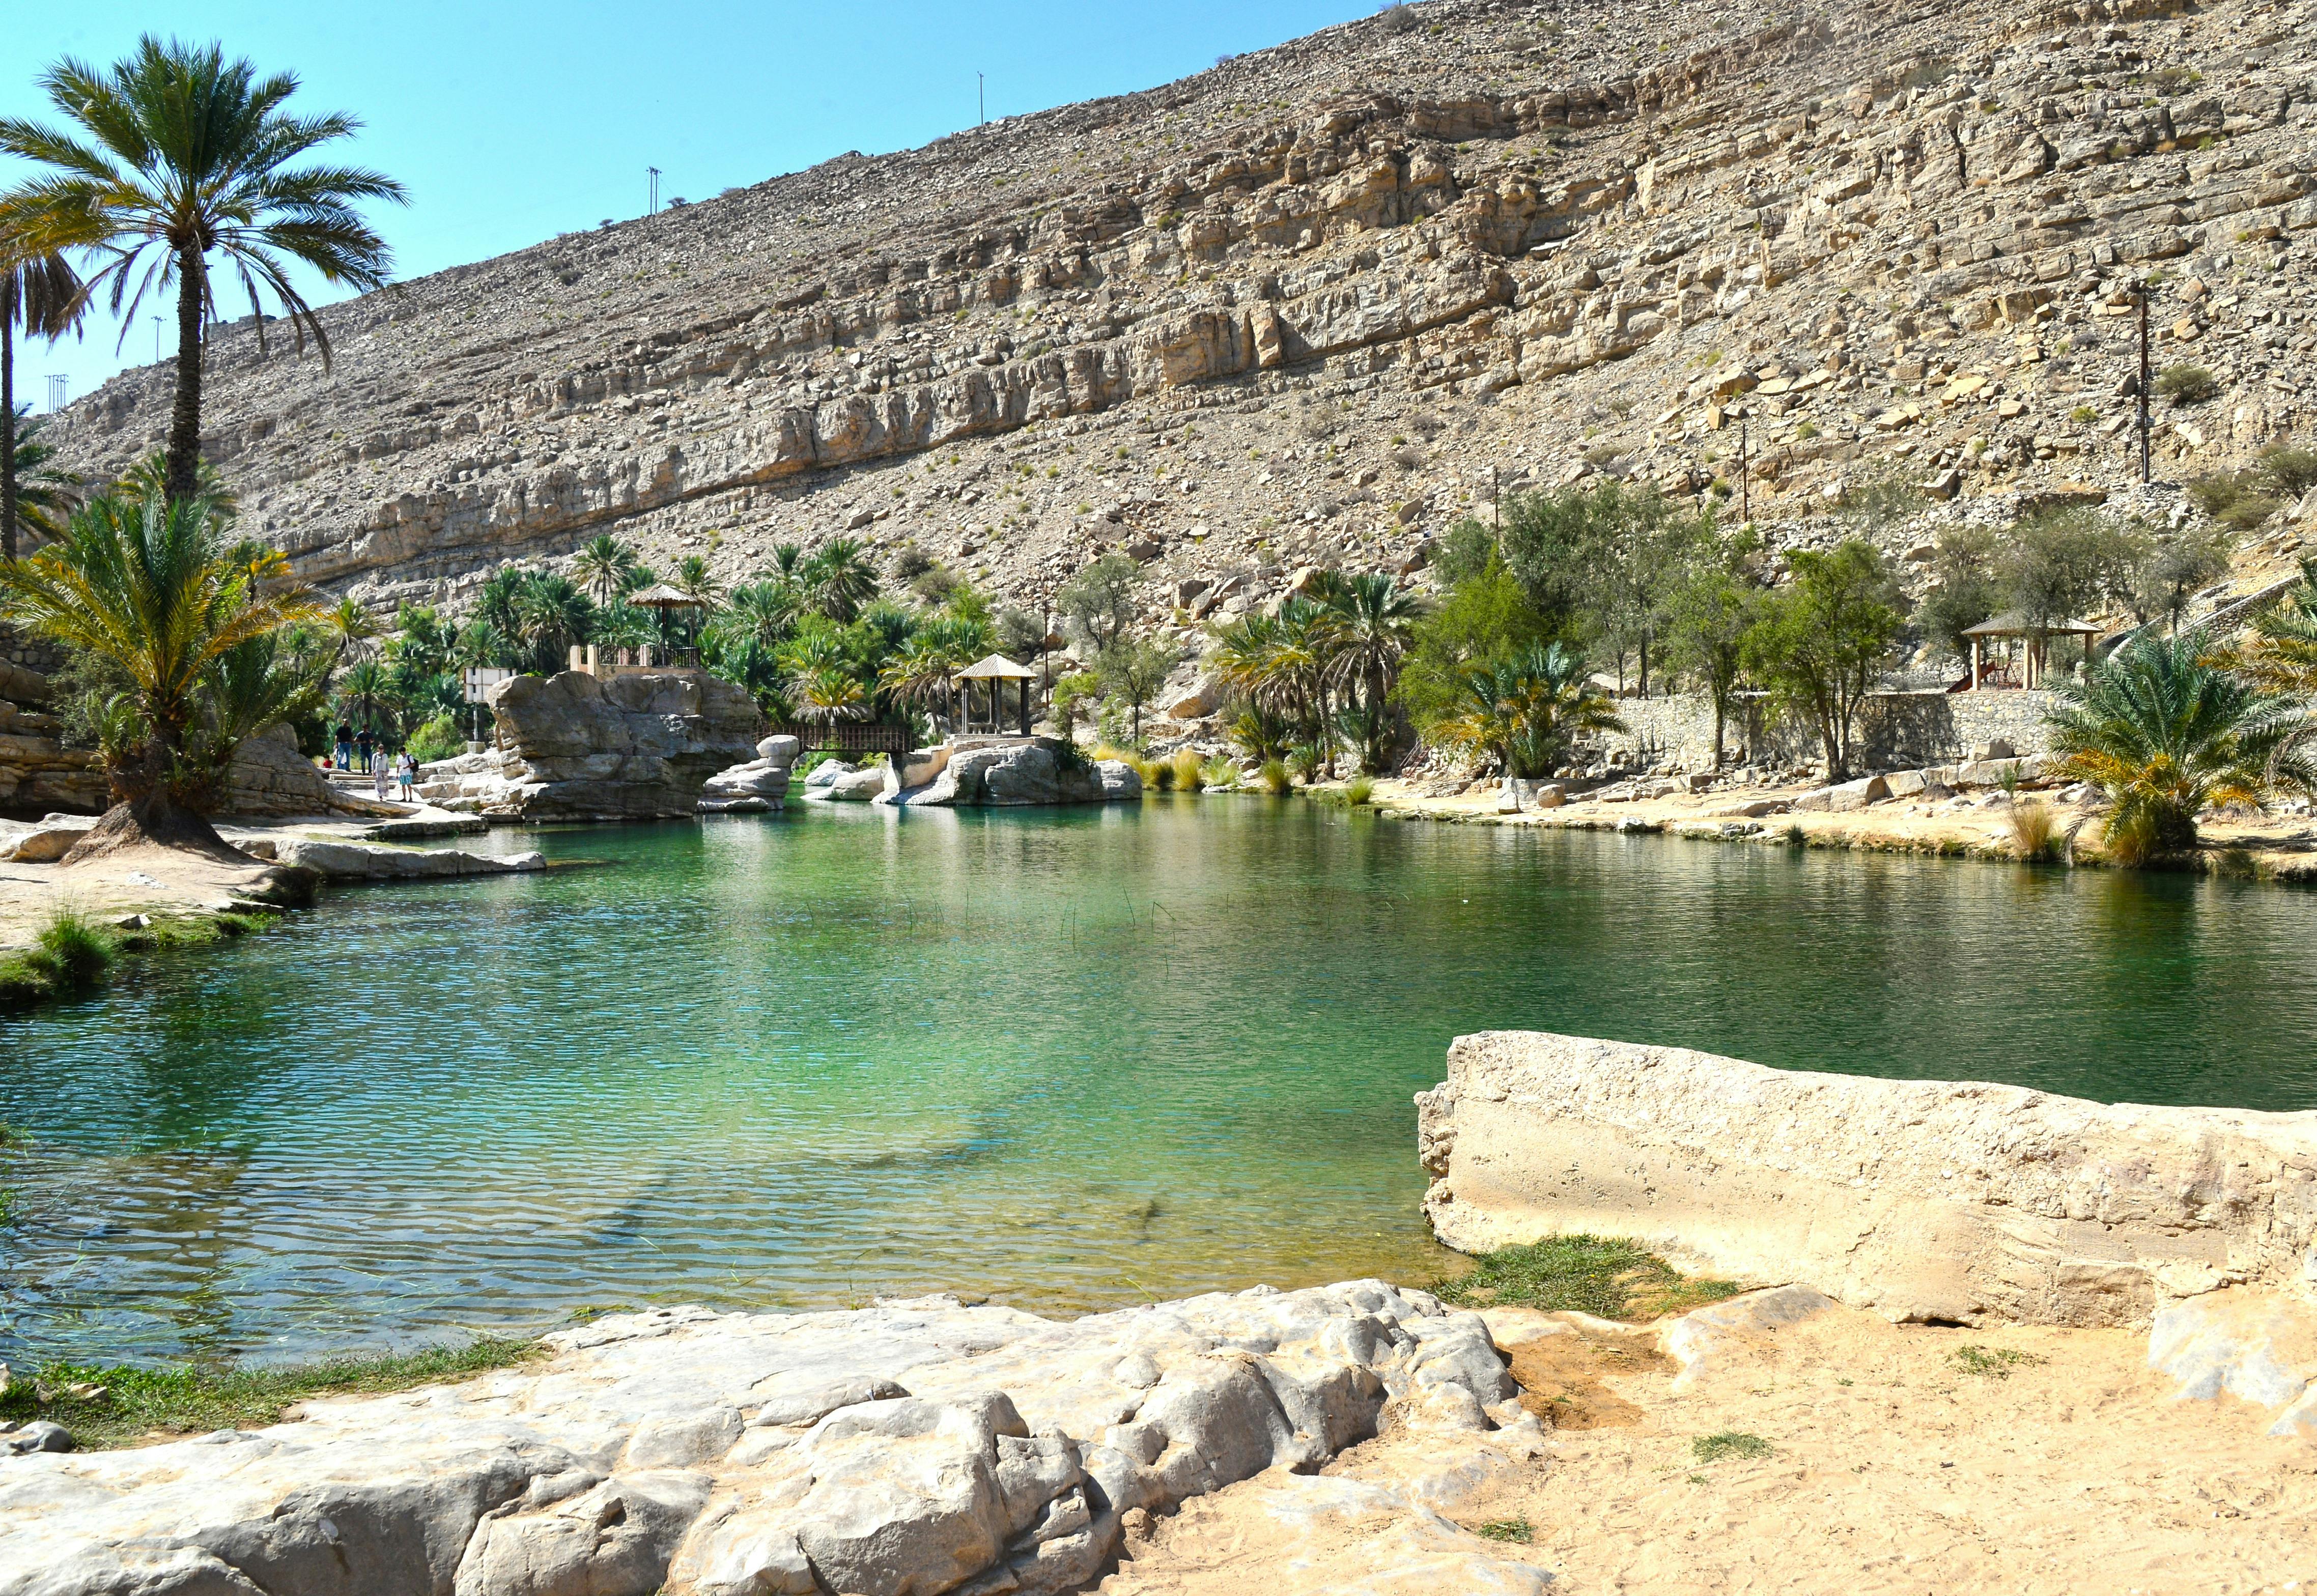 Private Tour zum Wadi Bani Khalid und zu den Wüstendörfern von Muscat mit Mittagessen